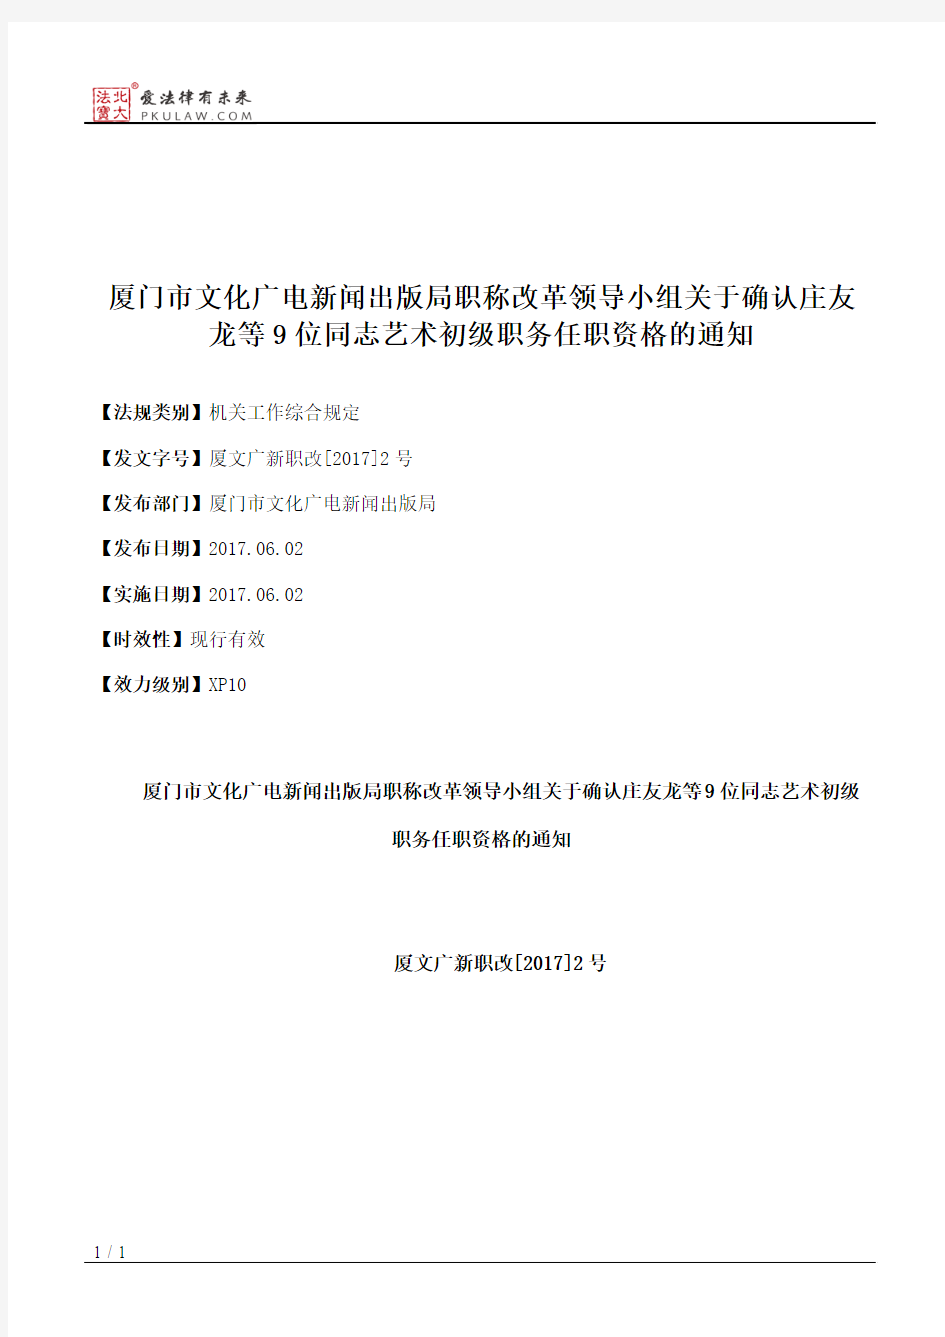 厦门市文化广电新闻出版局职称改革领导小组关于确认庄友龙等9位